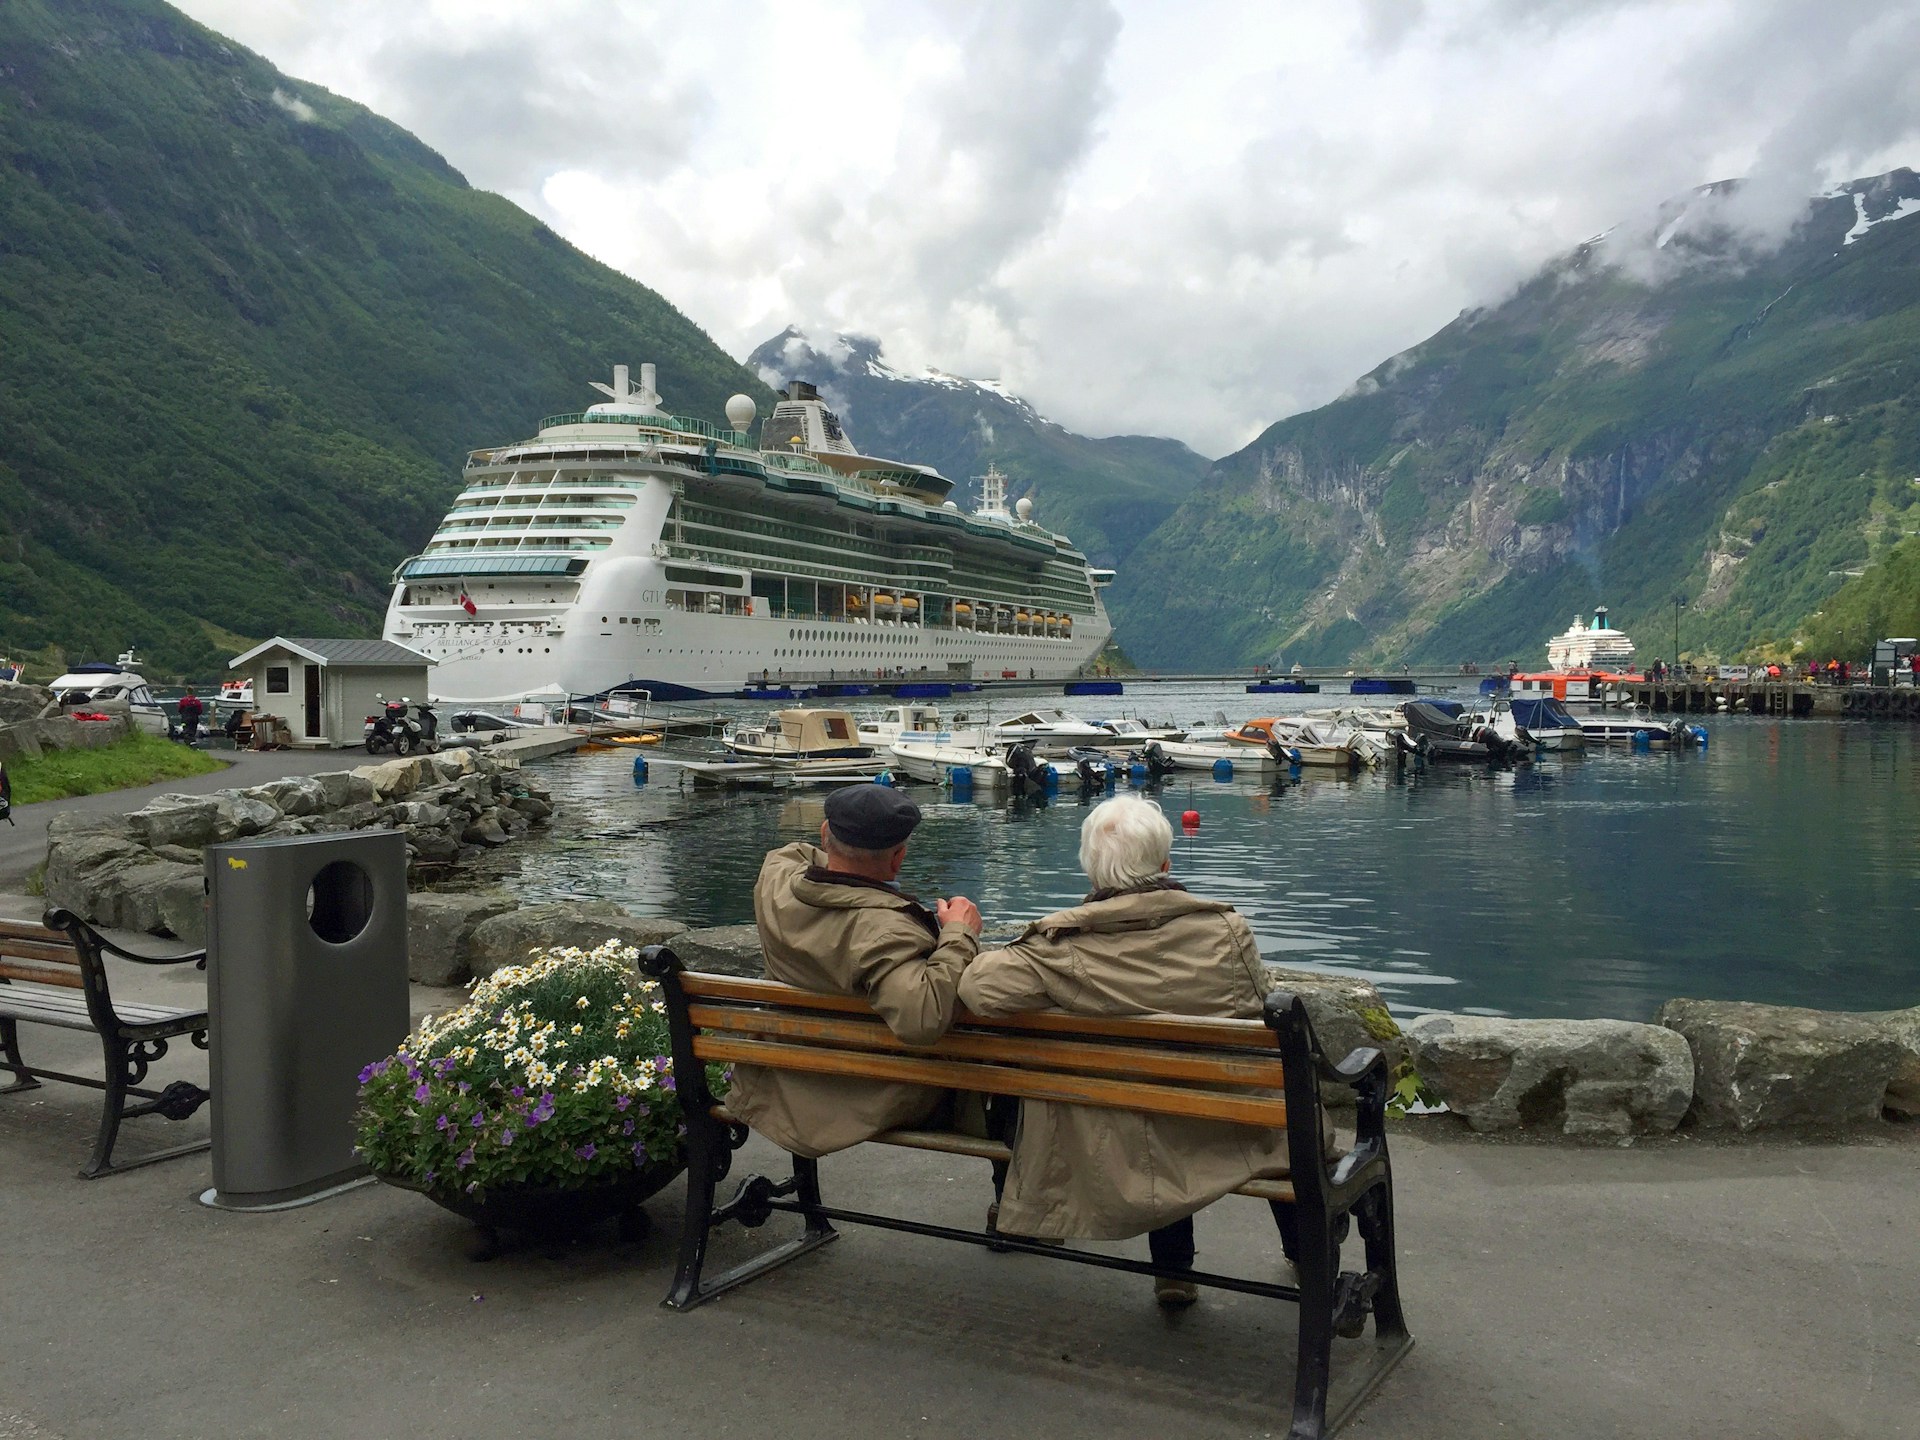 Ein älteres Paar sitzt auf einer Bank und beobachtet ein Kreuzfahrtschiff | Quelle: Unsplash